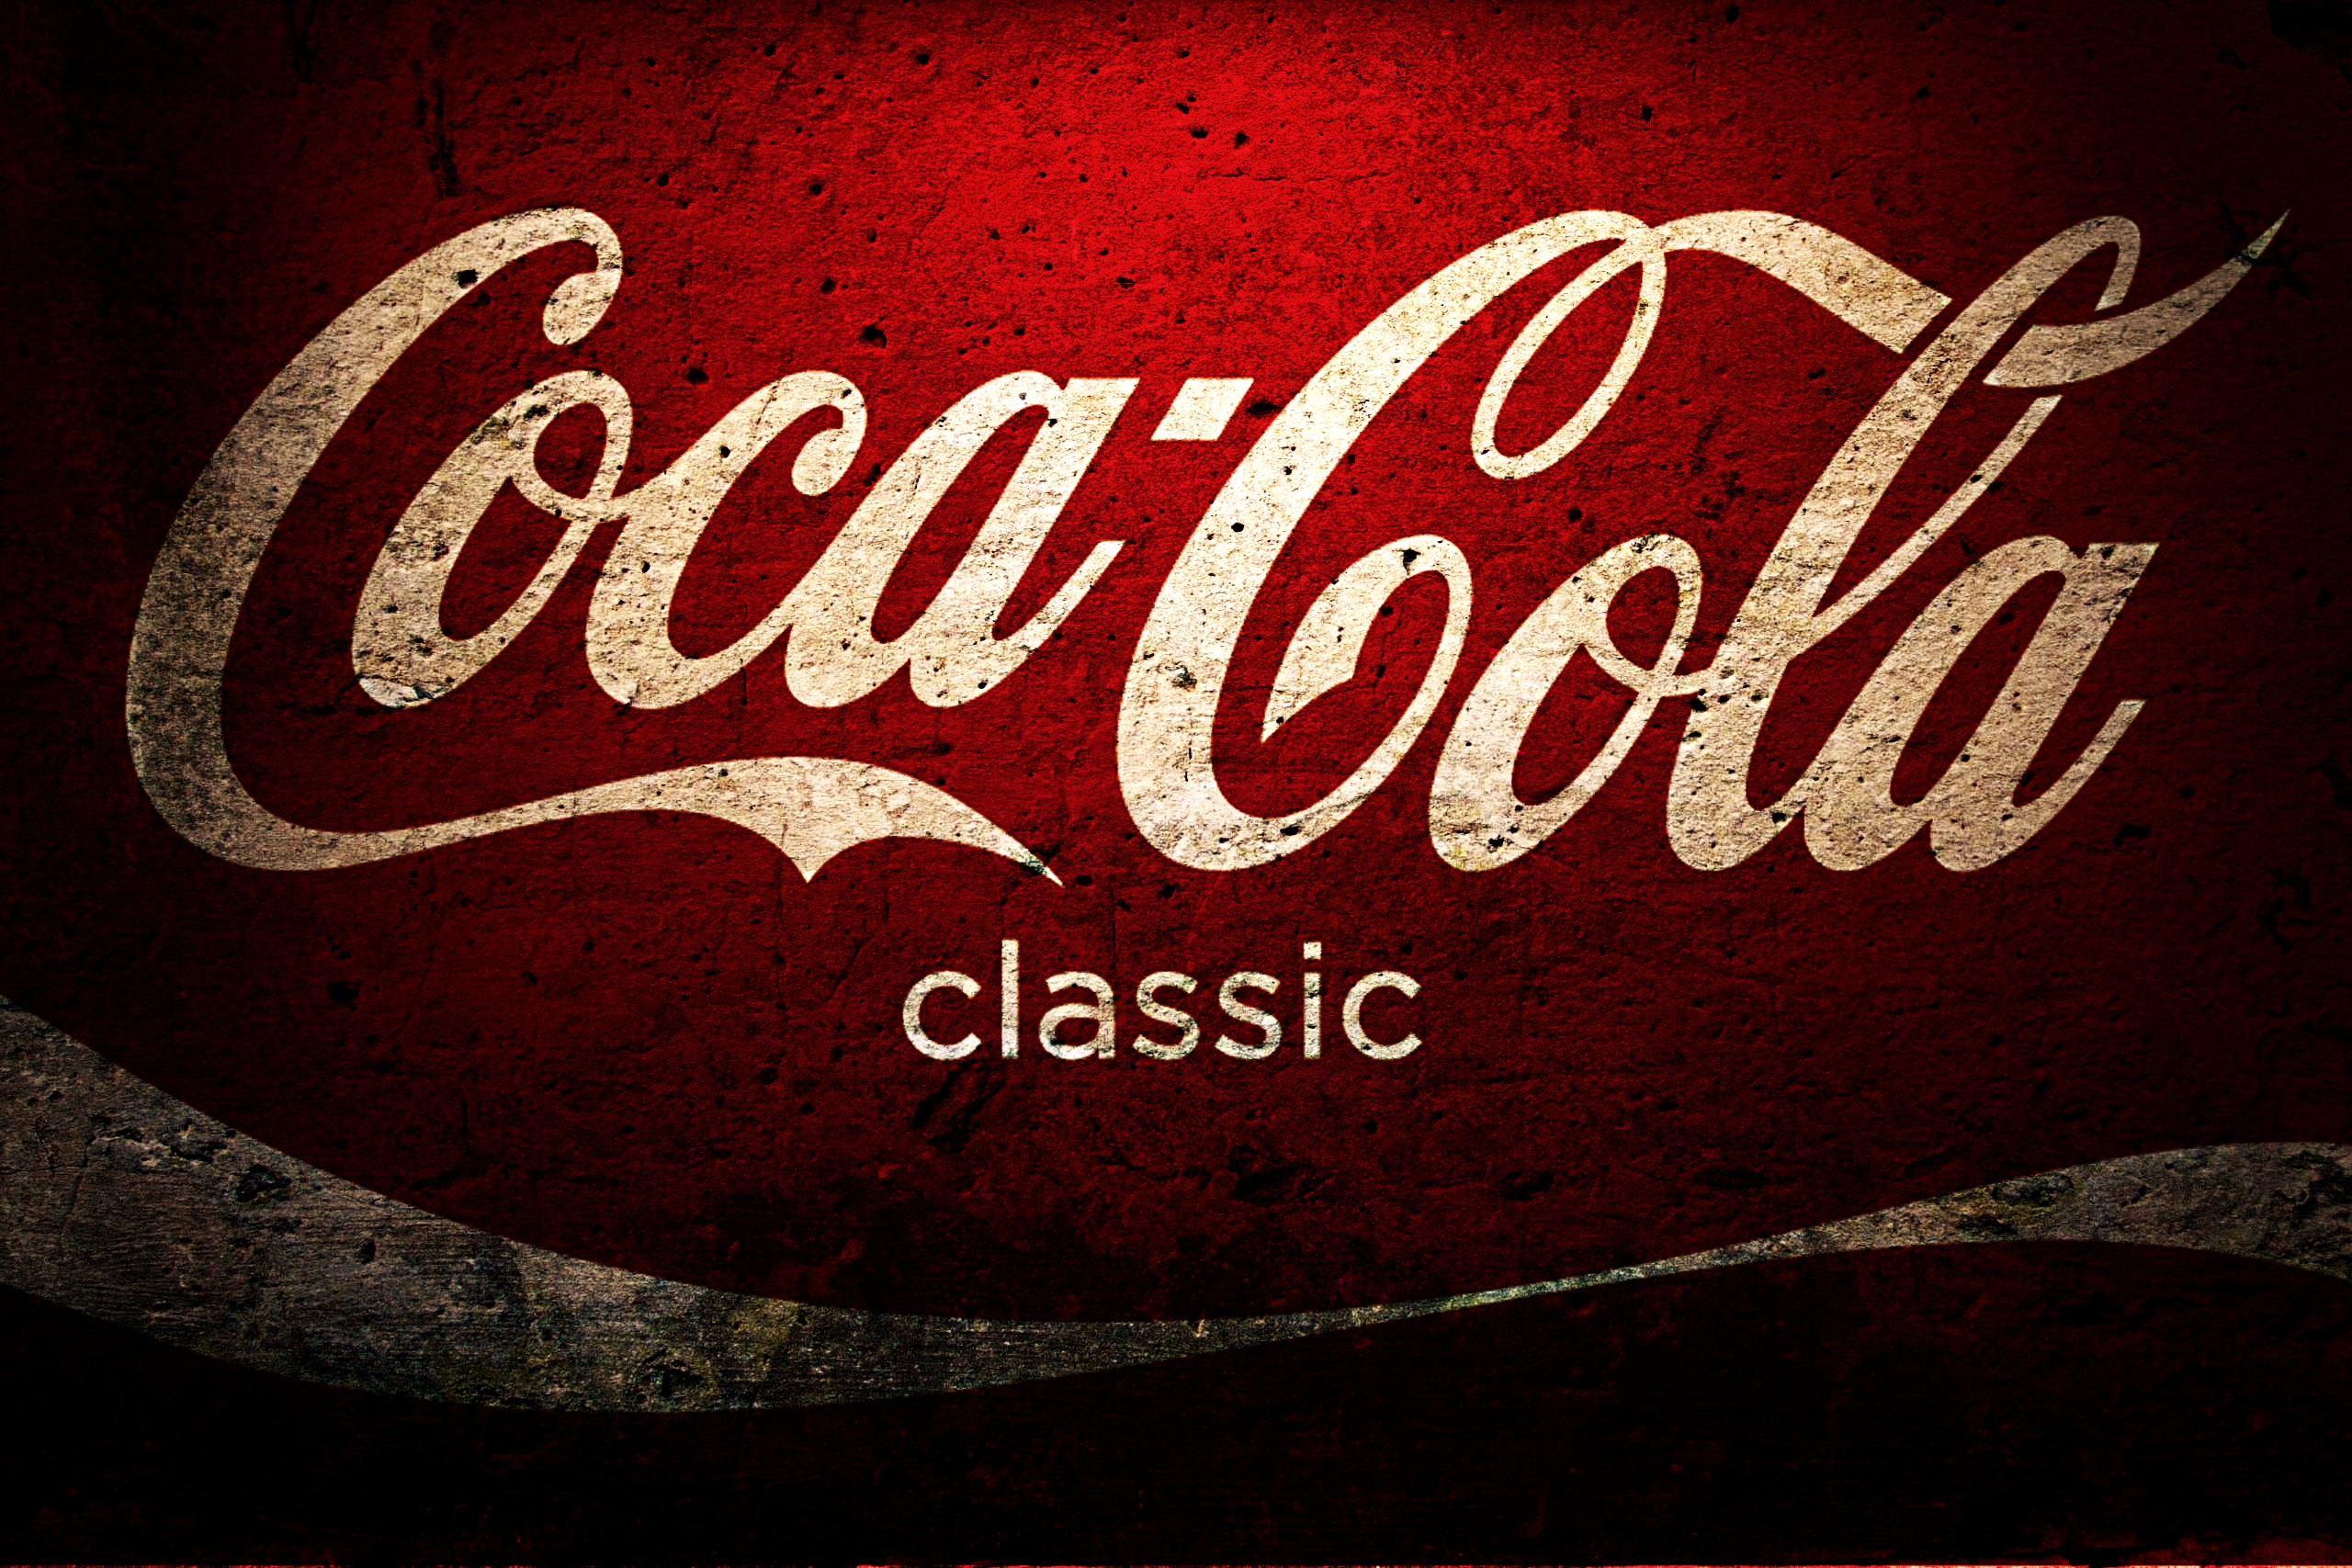 Coca cola wallpaper